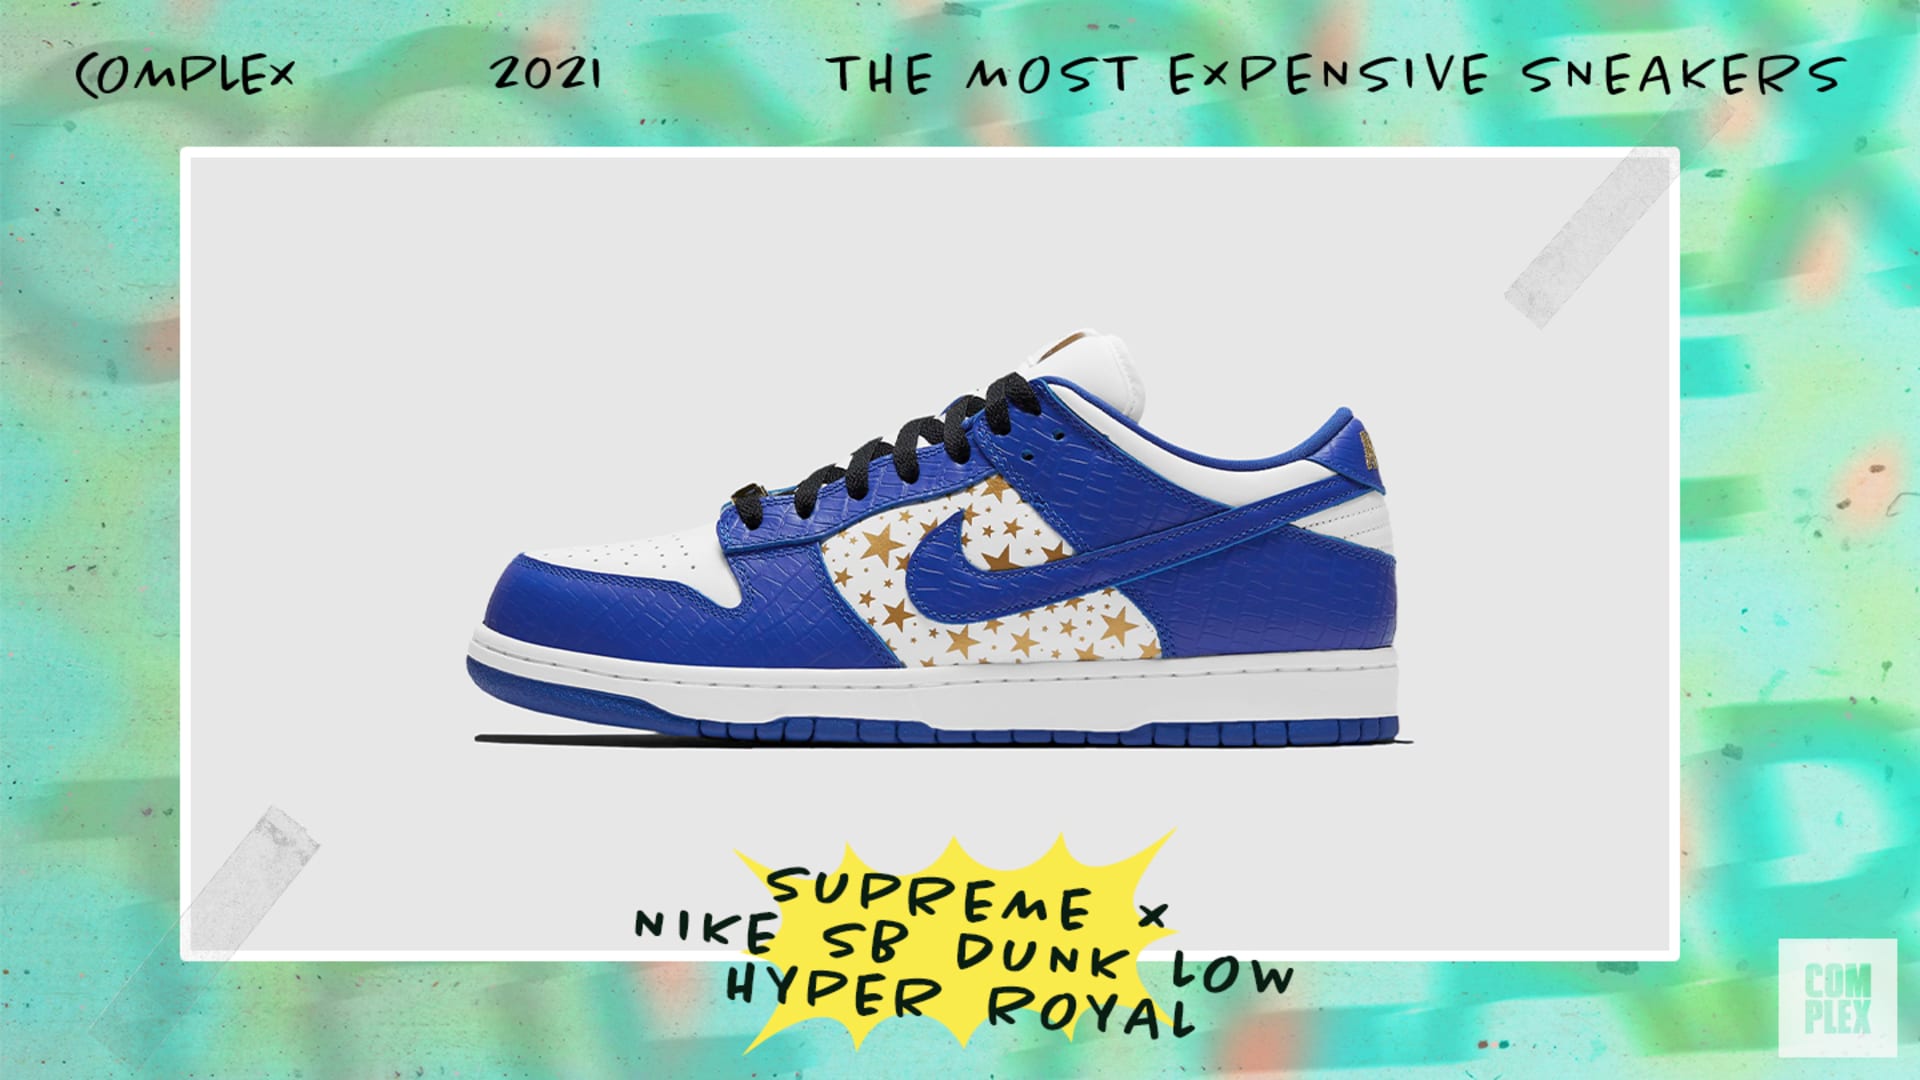 Supreme x Nike SB Dunk Low Hyper Royal